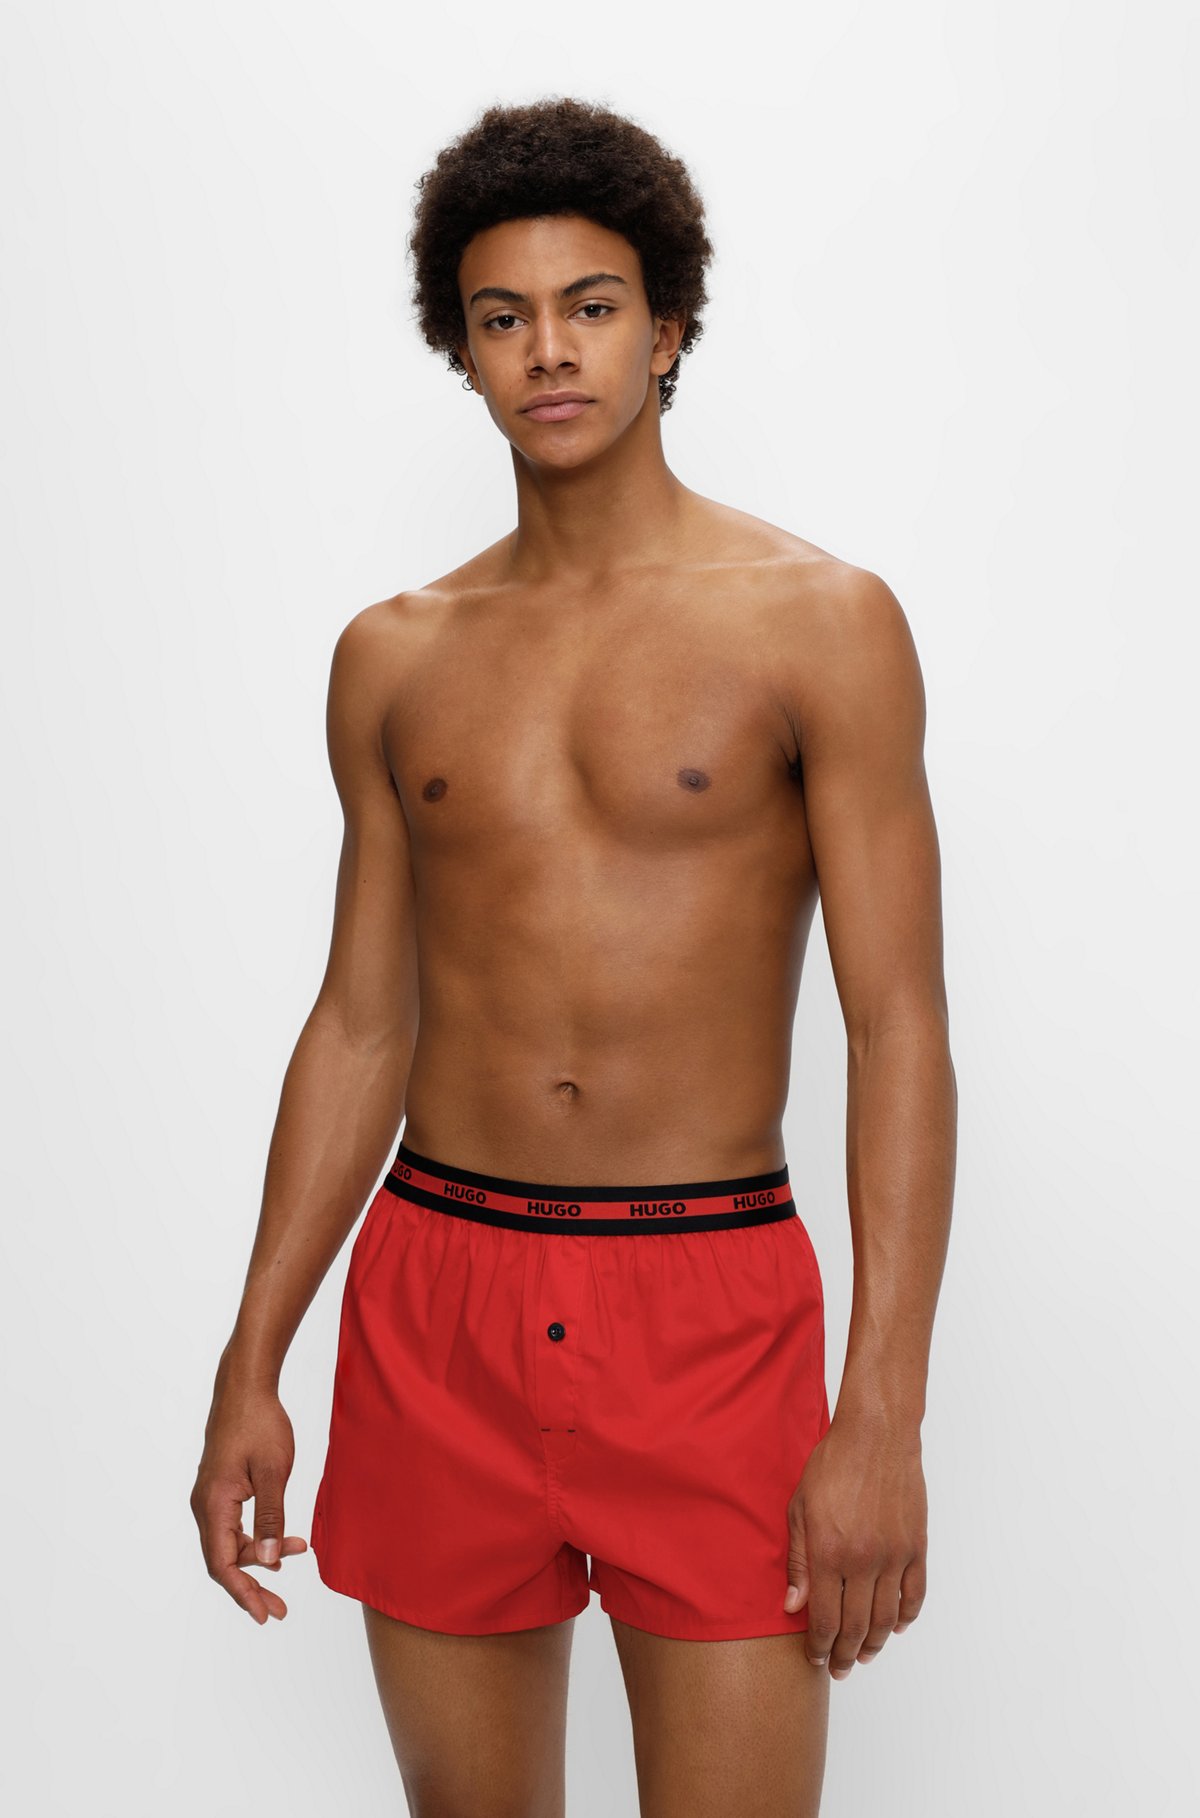 Zweier-Pack Boxershorts aus Baumwolle mit Logo am Bund, Rot/Dunkelblau